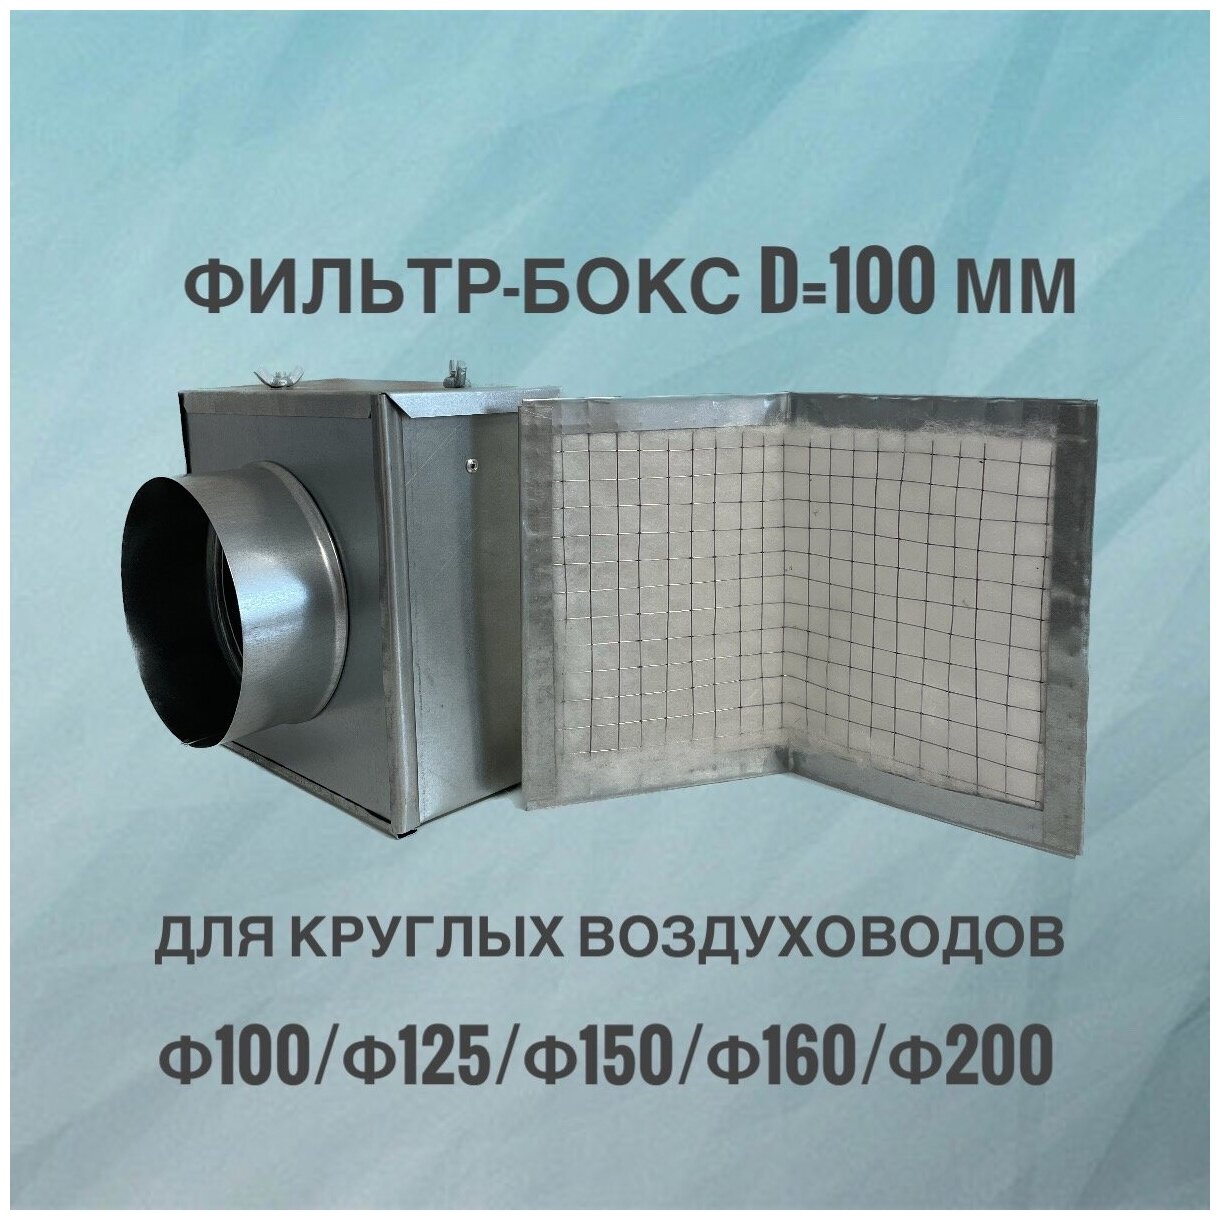 Воздушный фильтр-бокс для круглых воздуховодов воздушный фильтр вентиляционный из оцинкованной стали 100 мм